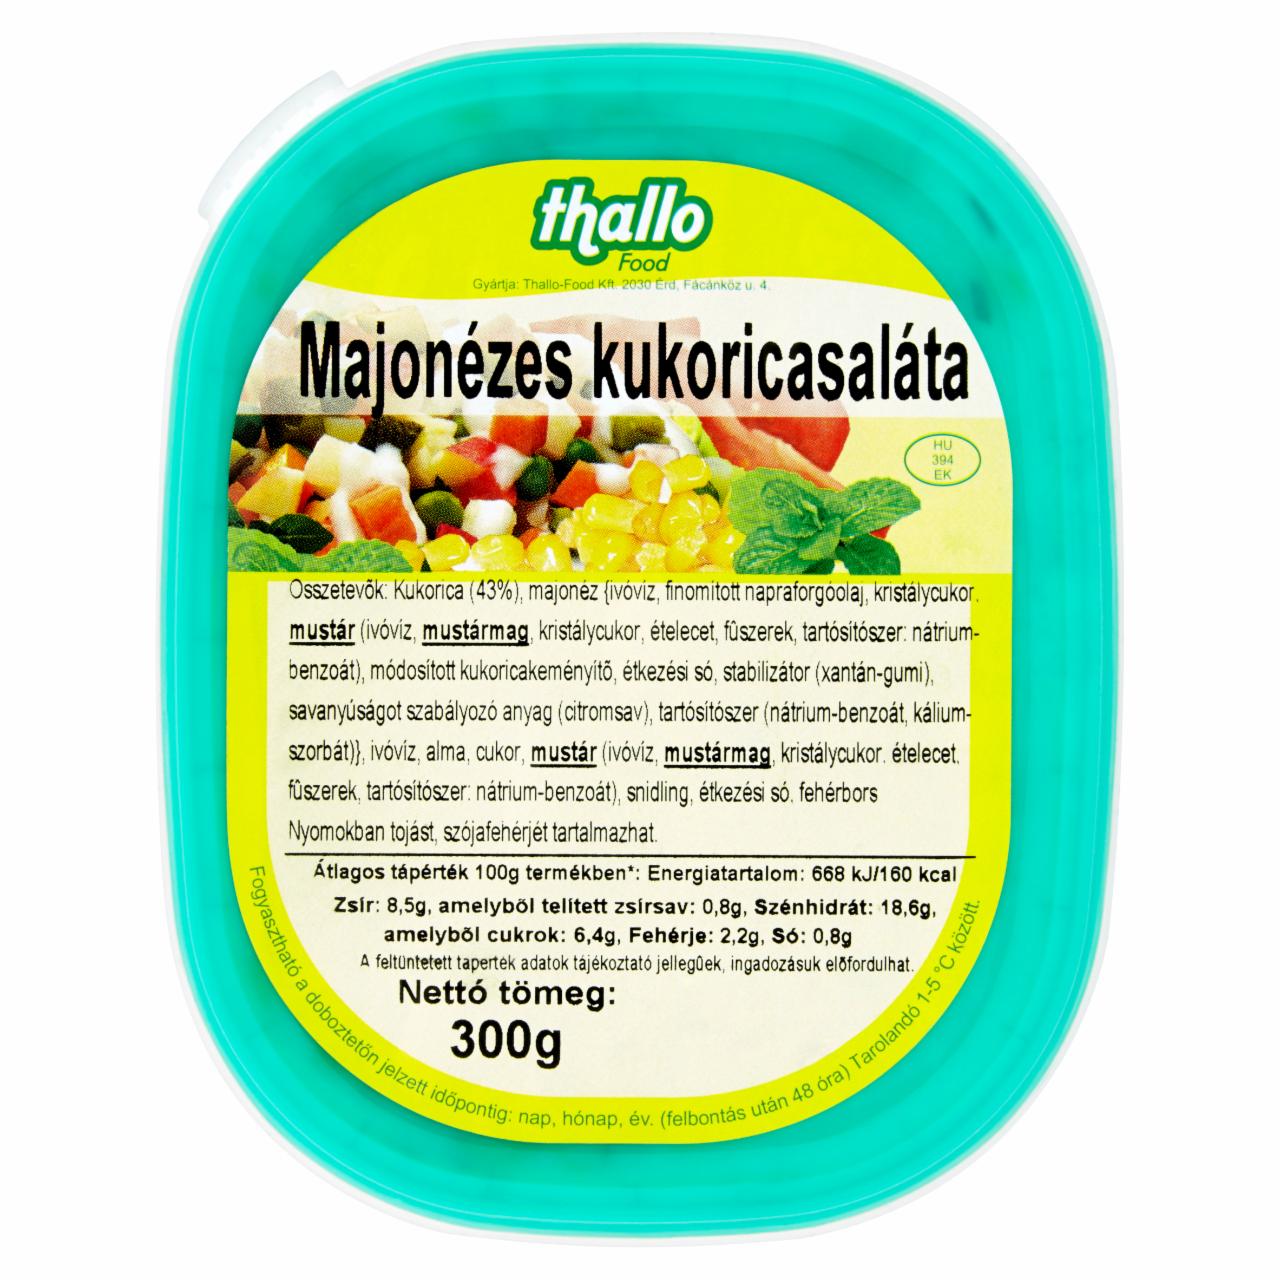 Képek - Thallo Food majonézes kukoricasaláta